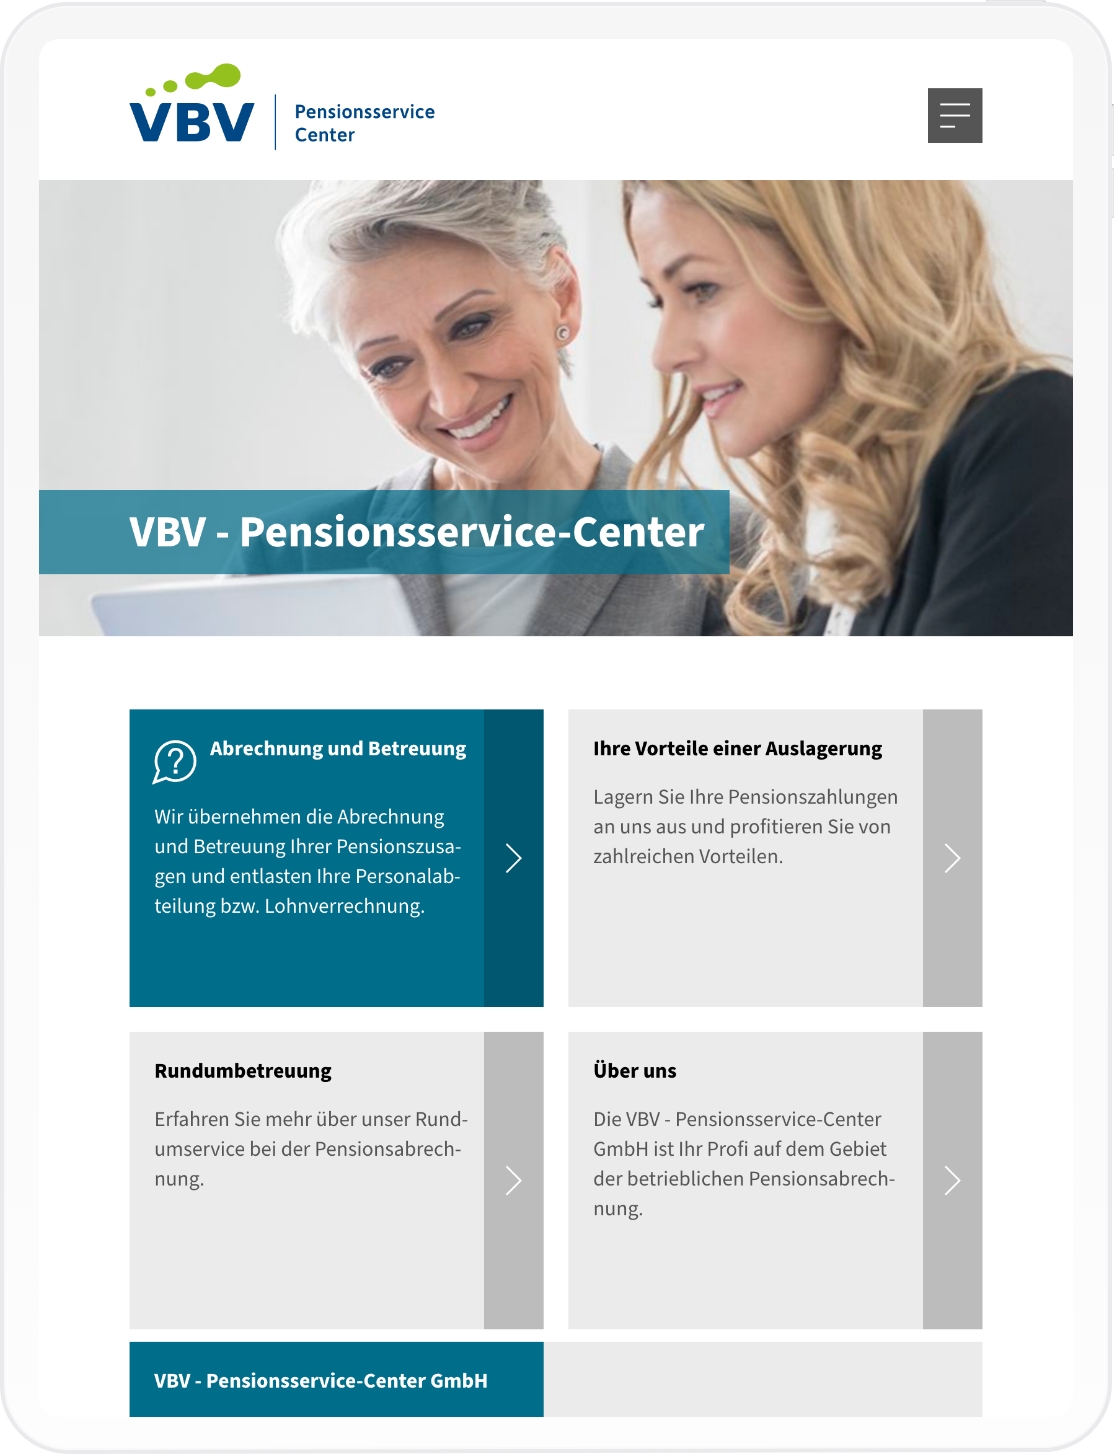 Tablet-Mockup des VBV Pensionsservice-Center